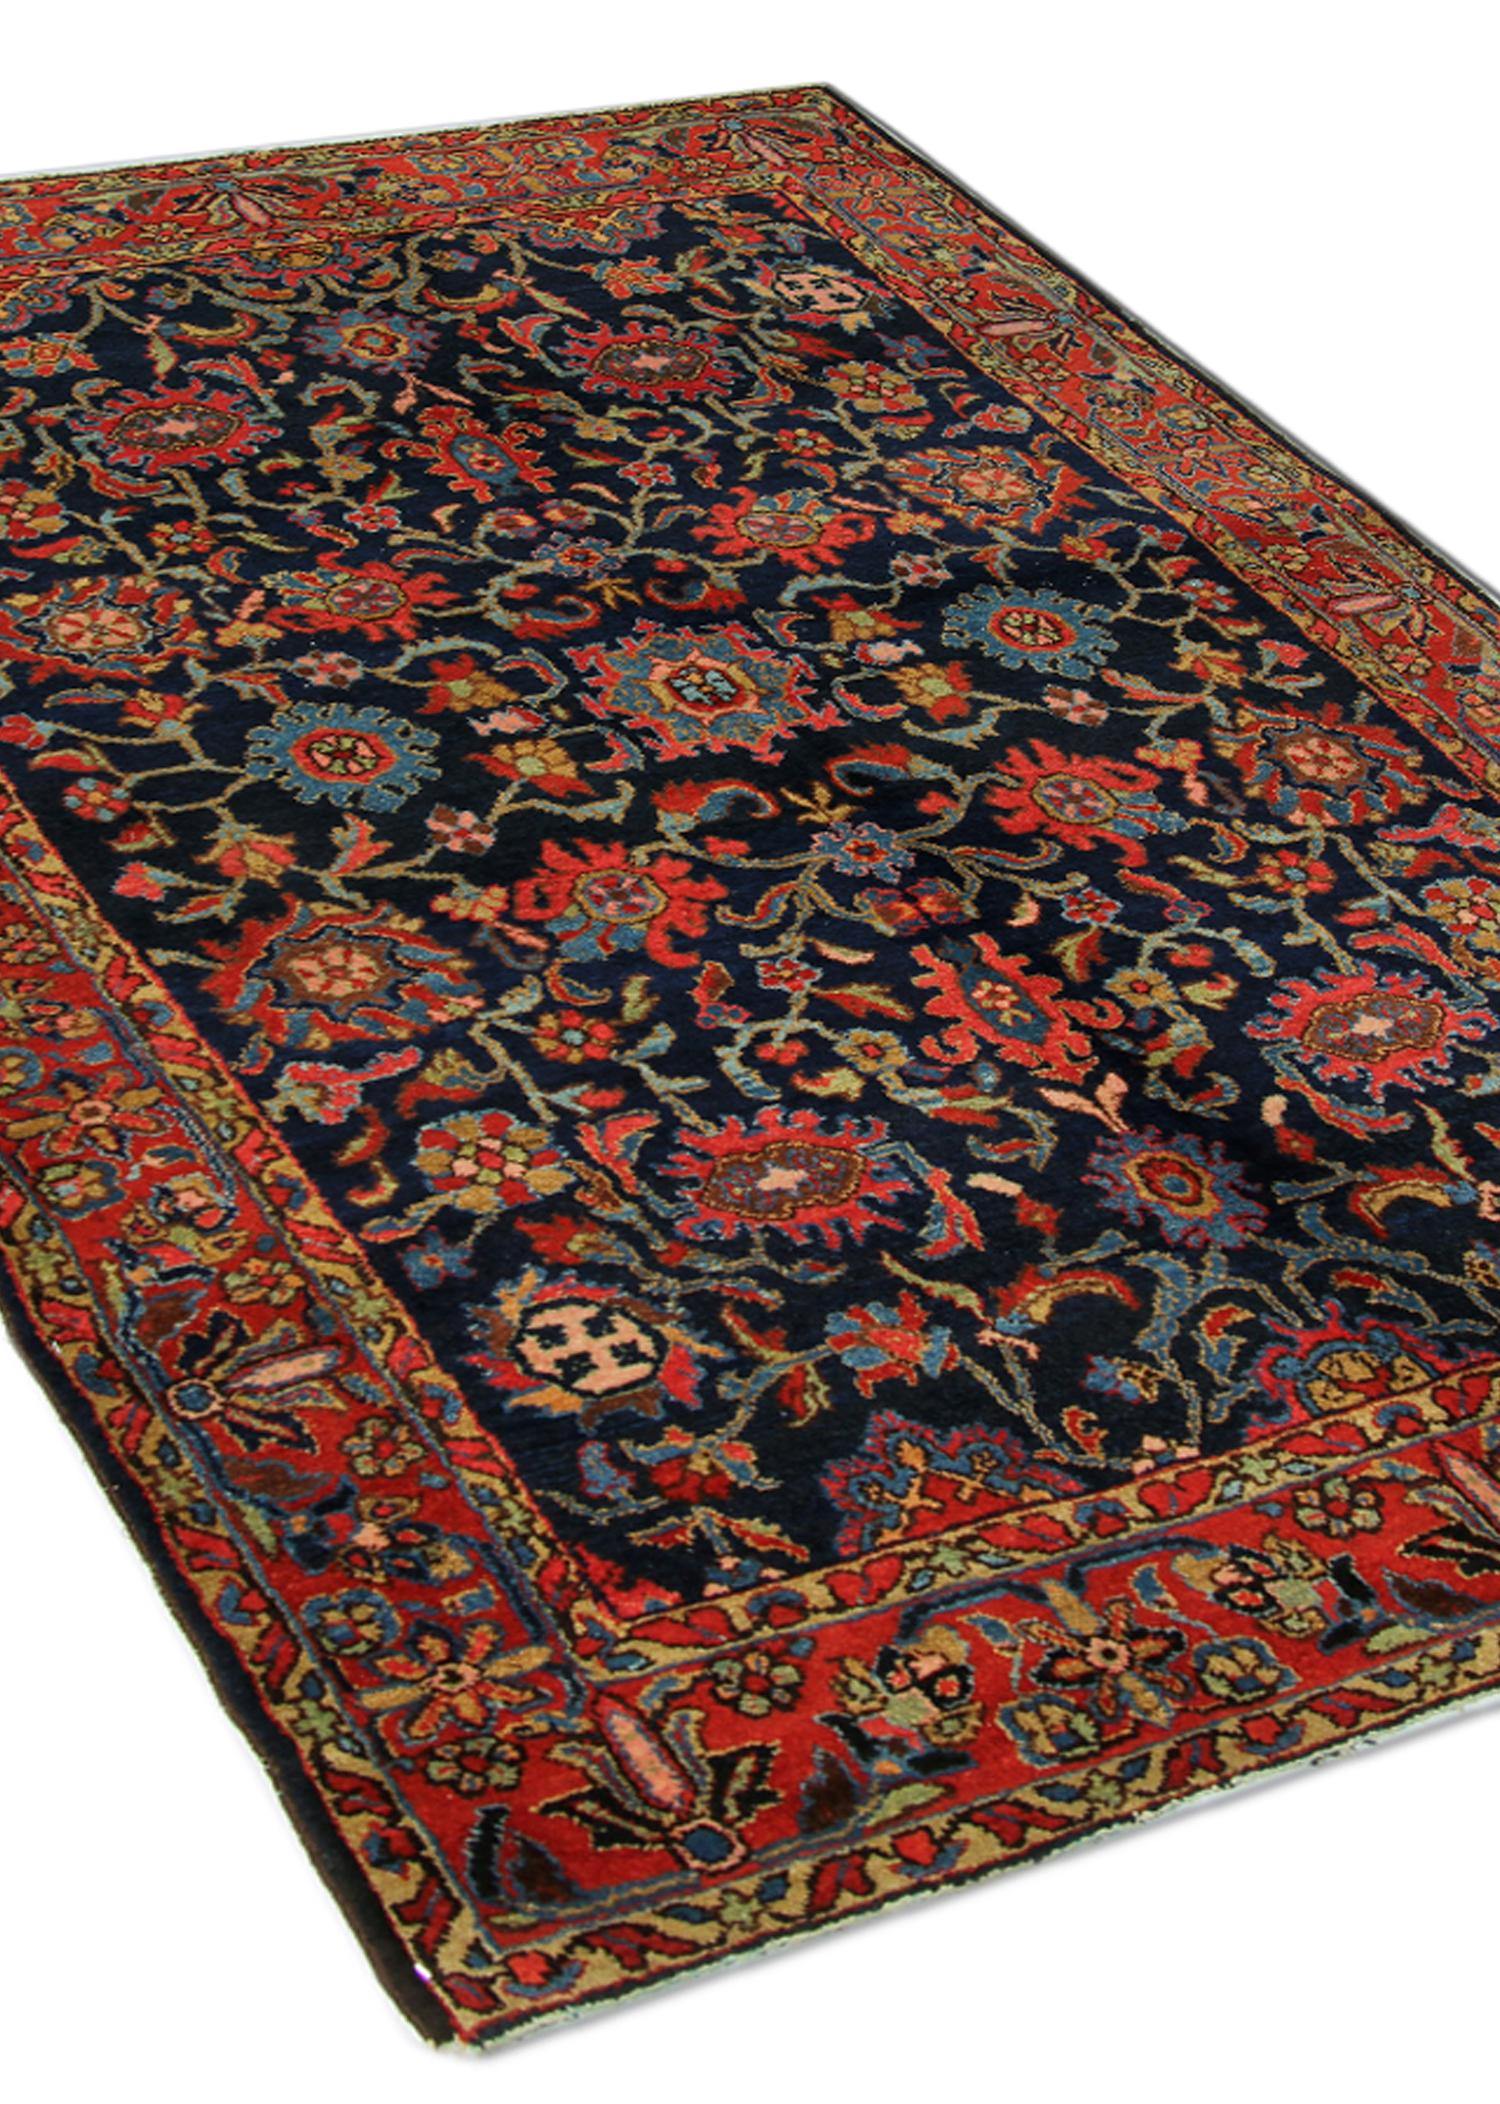 Sind Sie auf der Suche nach einem antiken Teppich, der Ihr Zuhause aufwertet? Dann suchen Sie nicht weiter! Dieser feine antike Teppich ist ein schönes Beispiel für traditionelle Teppiche, die im frühen 20. Jahrhundert, um 1900, gewebt wurden. Das